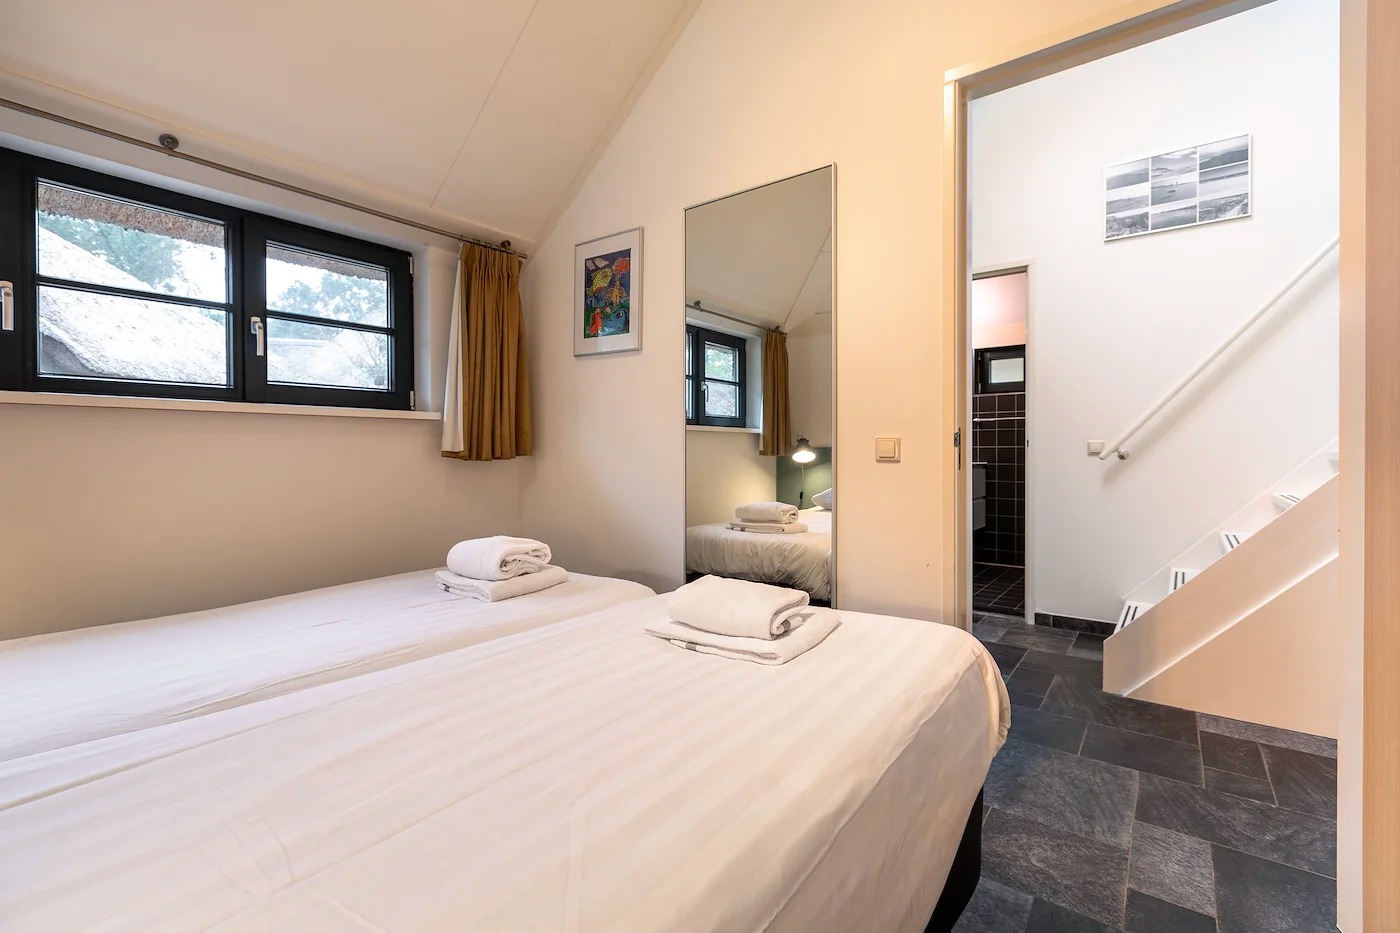 Villapparte-Dormio Resorts-Buitenhuis 4-Knus vakantiehuis voor 4 personen-Park Scorleduyn-Schoorl-Noord-Holland-luxe slaapkamer